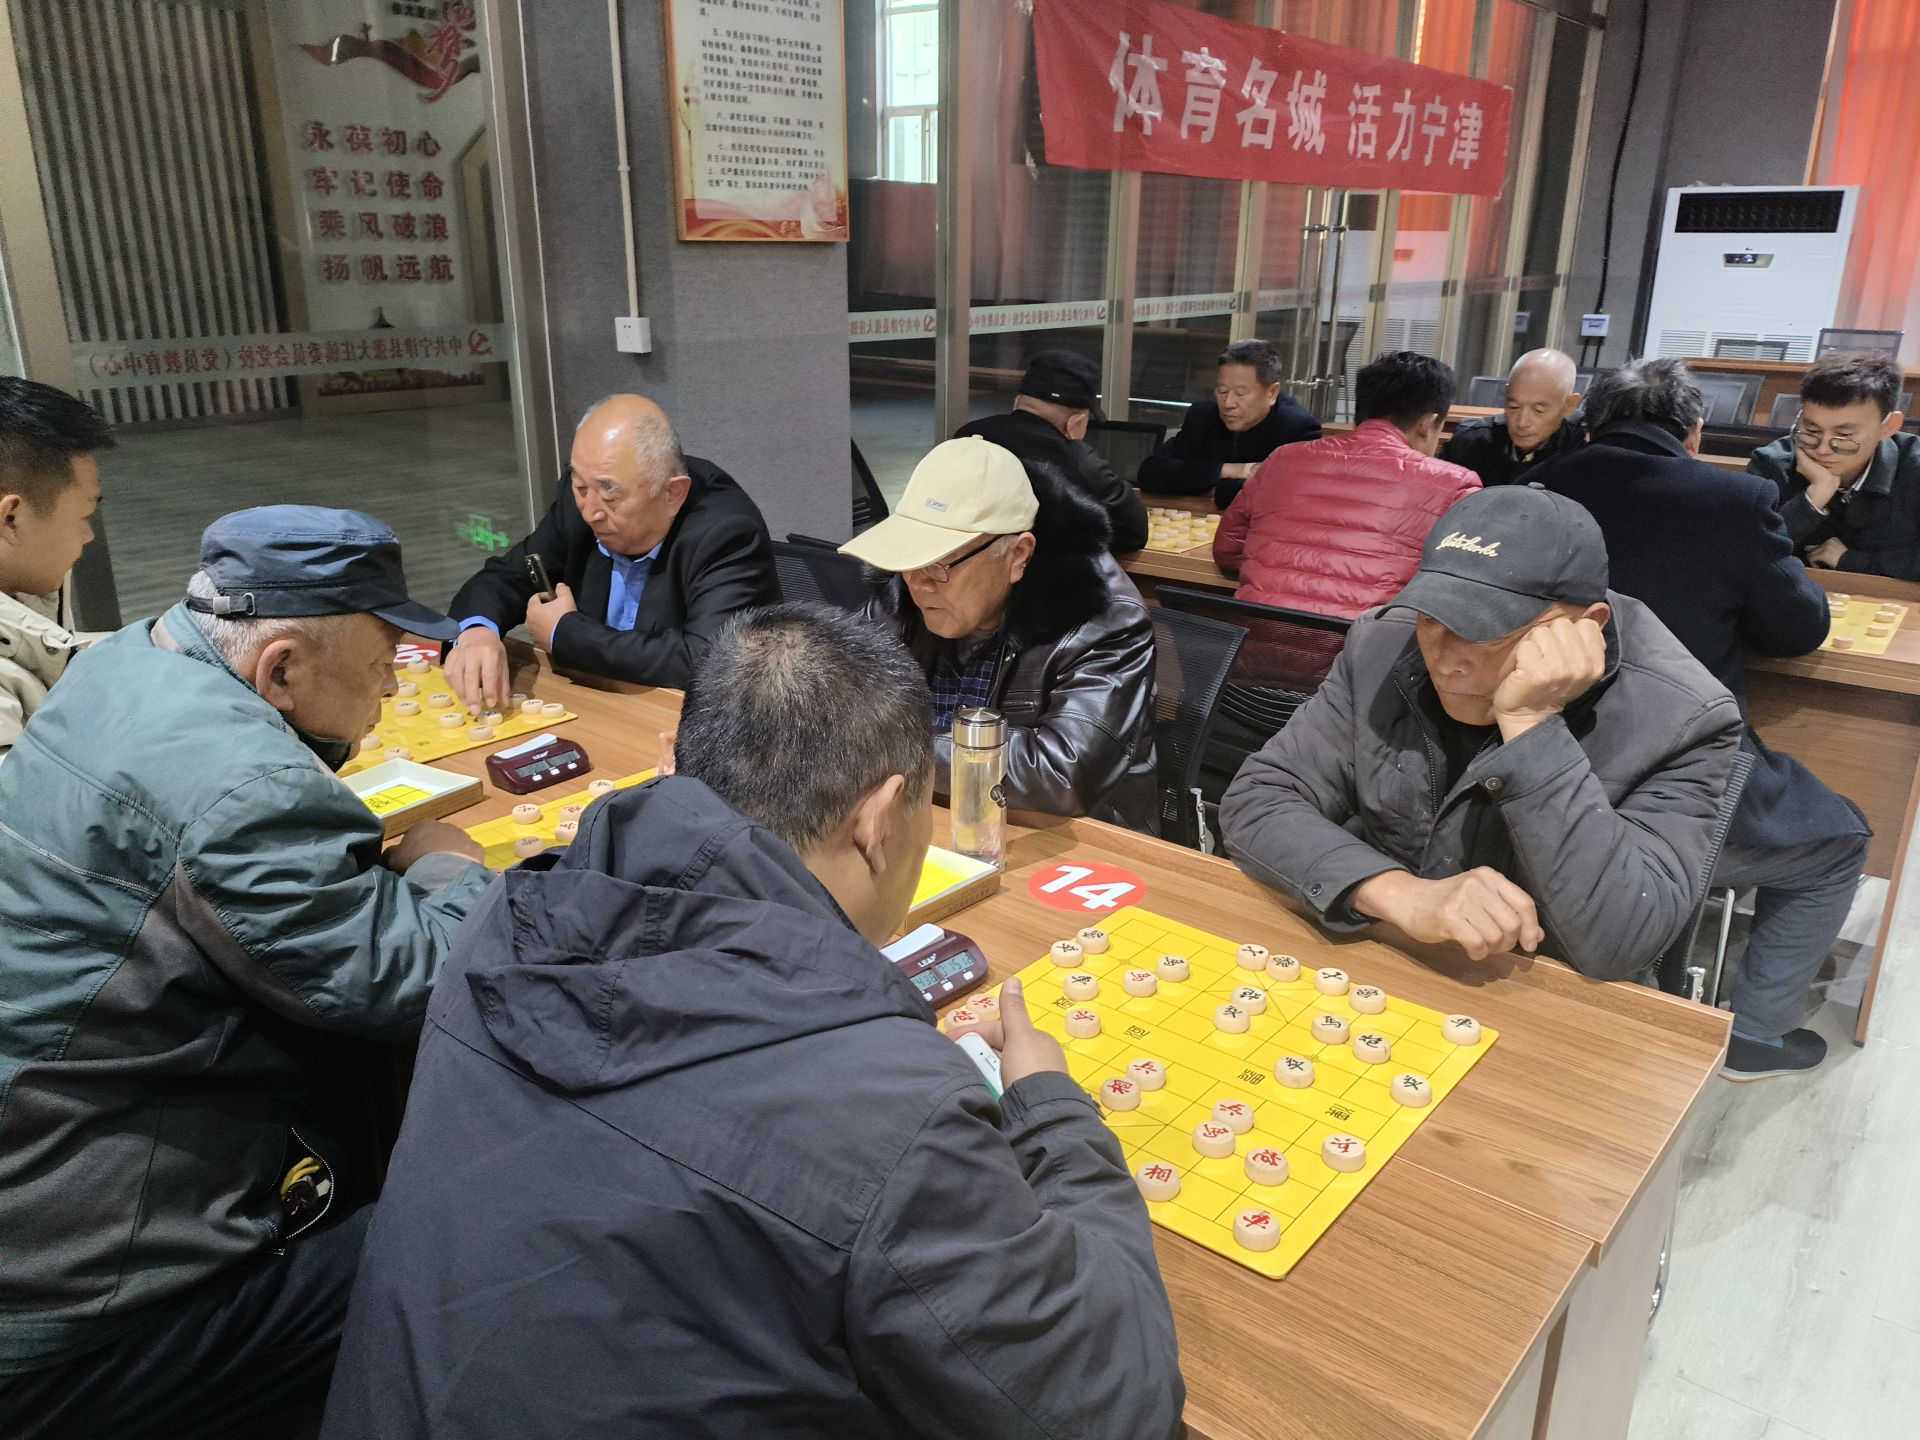 和美乡村棋开得胜宁津县举办首届村象棋个人挑战赛